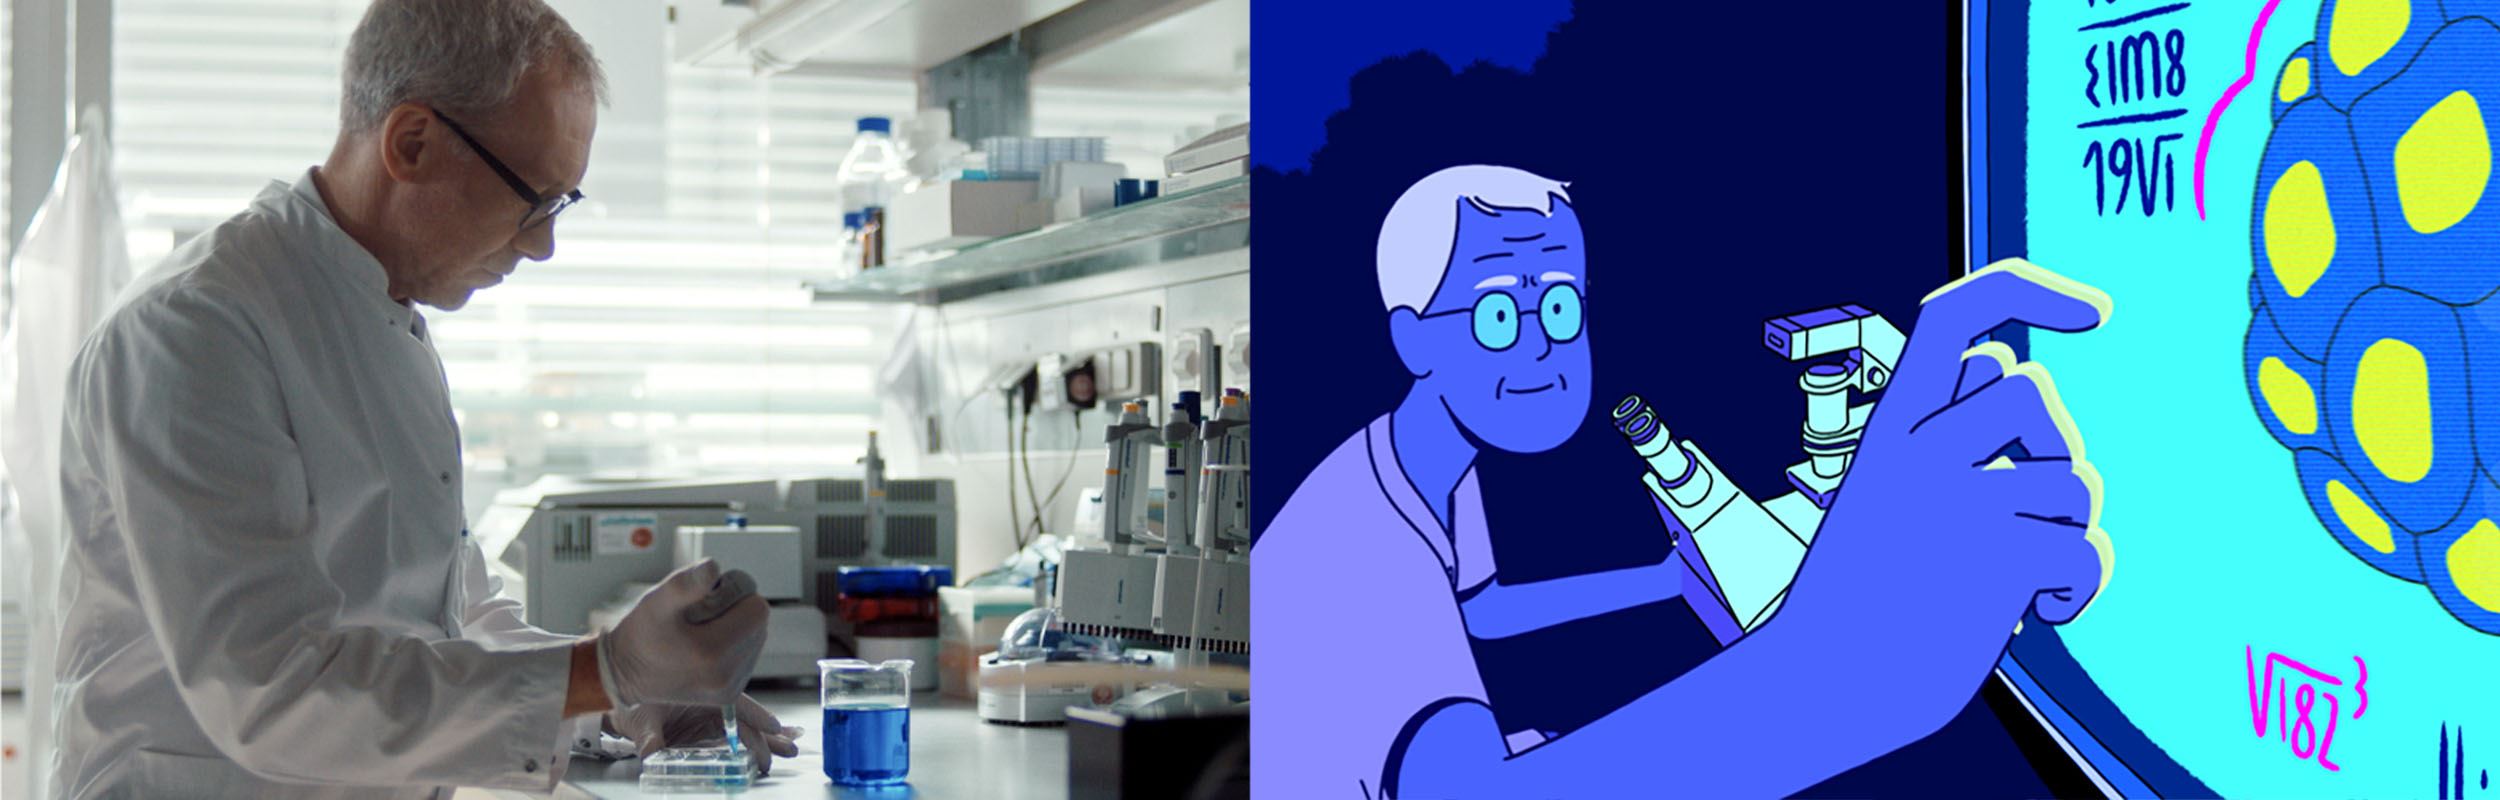 Ένα εικονογραφημένο σκίτσο ενός επιστήμονα της NIVEA, ο οποίος δημιουργεί ένα ειδικό καινοτόμο αντηλιακό για προστασία από το μπλε φως.